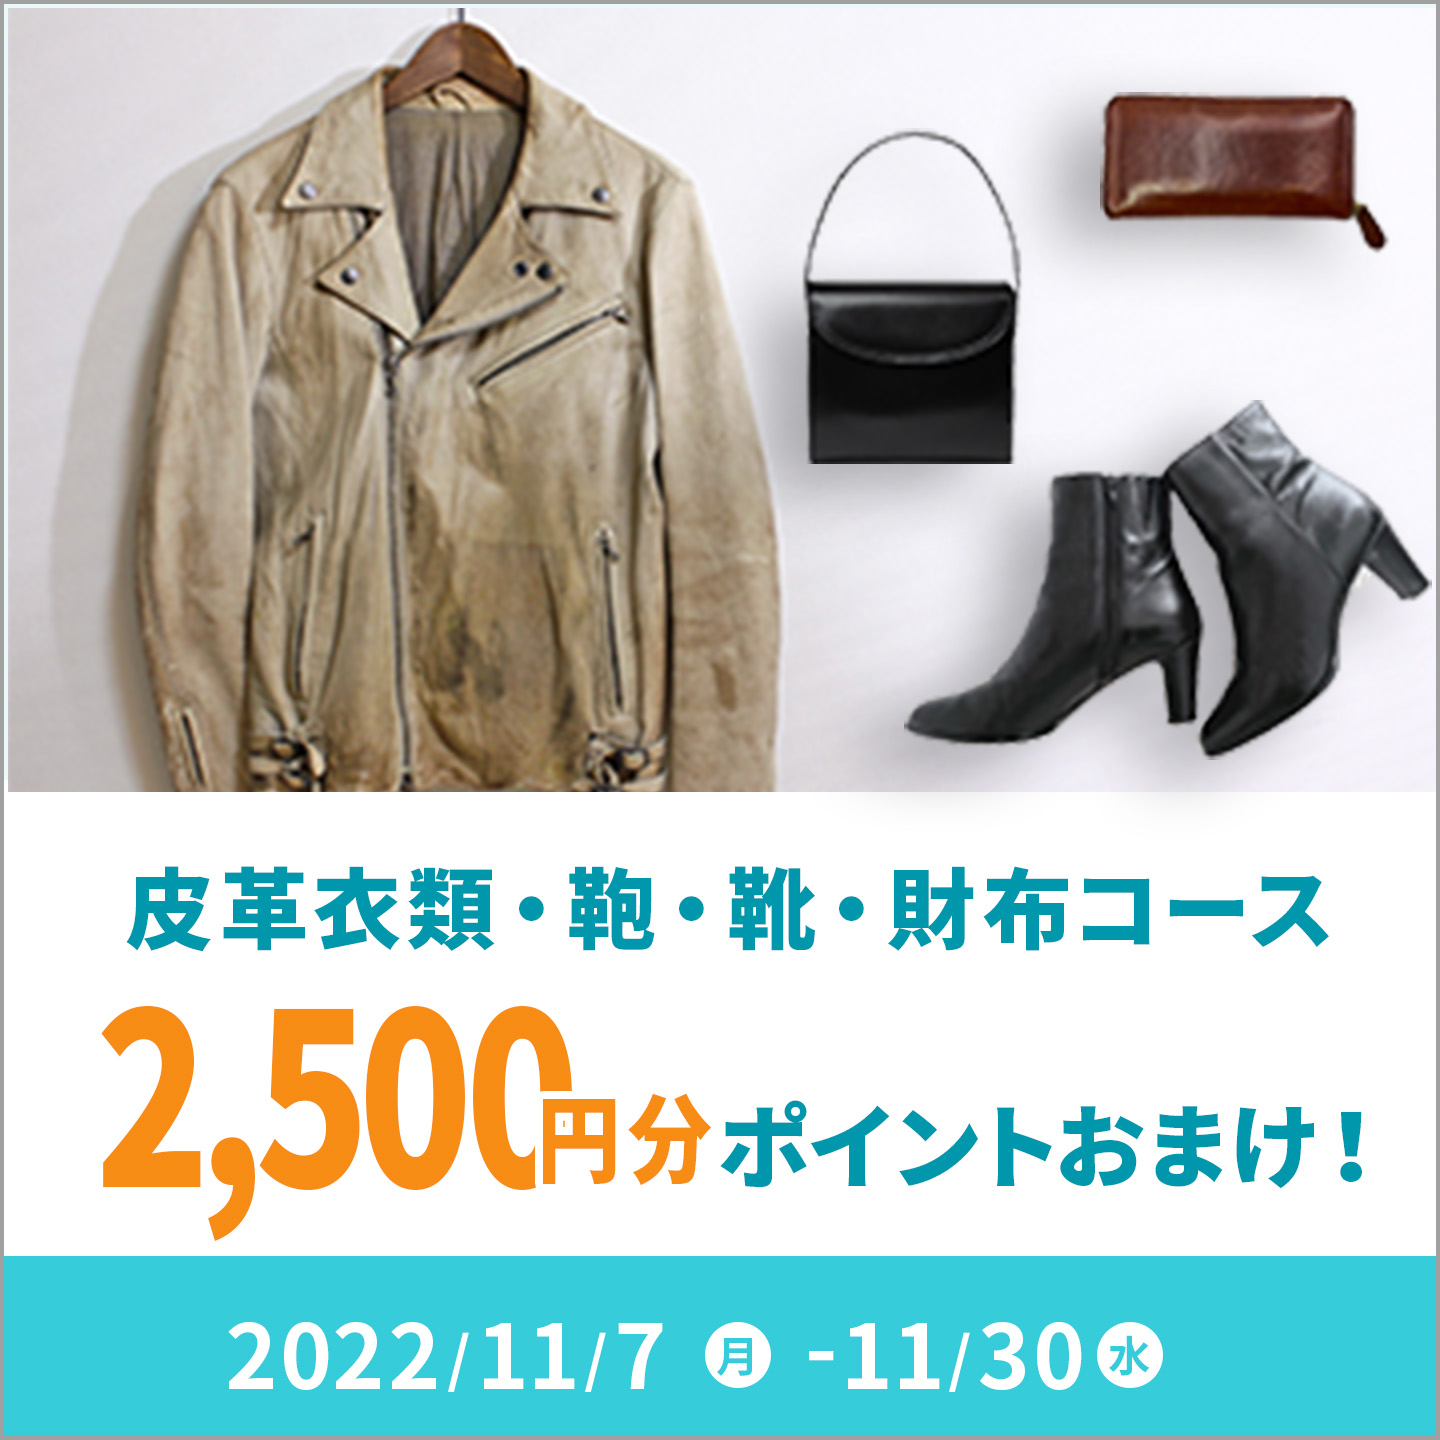 皮革衣類・財布・鞄・靴コース 2,500ポイントおまけキャンペーン